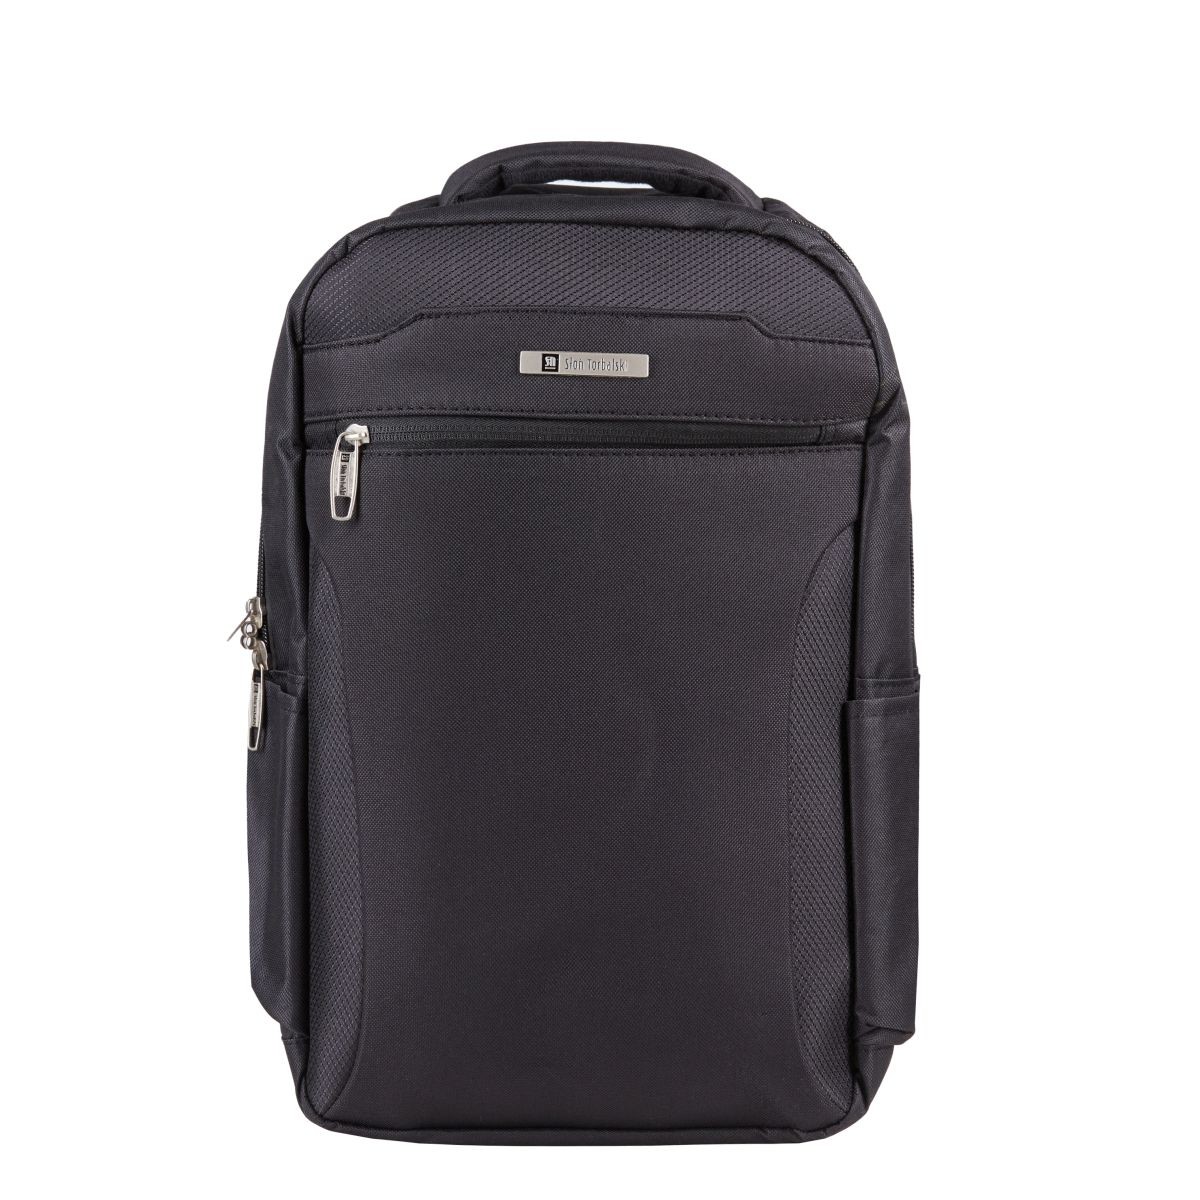 czarny plecak podróżny 40x20x25 cm bagaż podręczny z rączką i uchwytem na walizkę